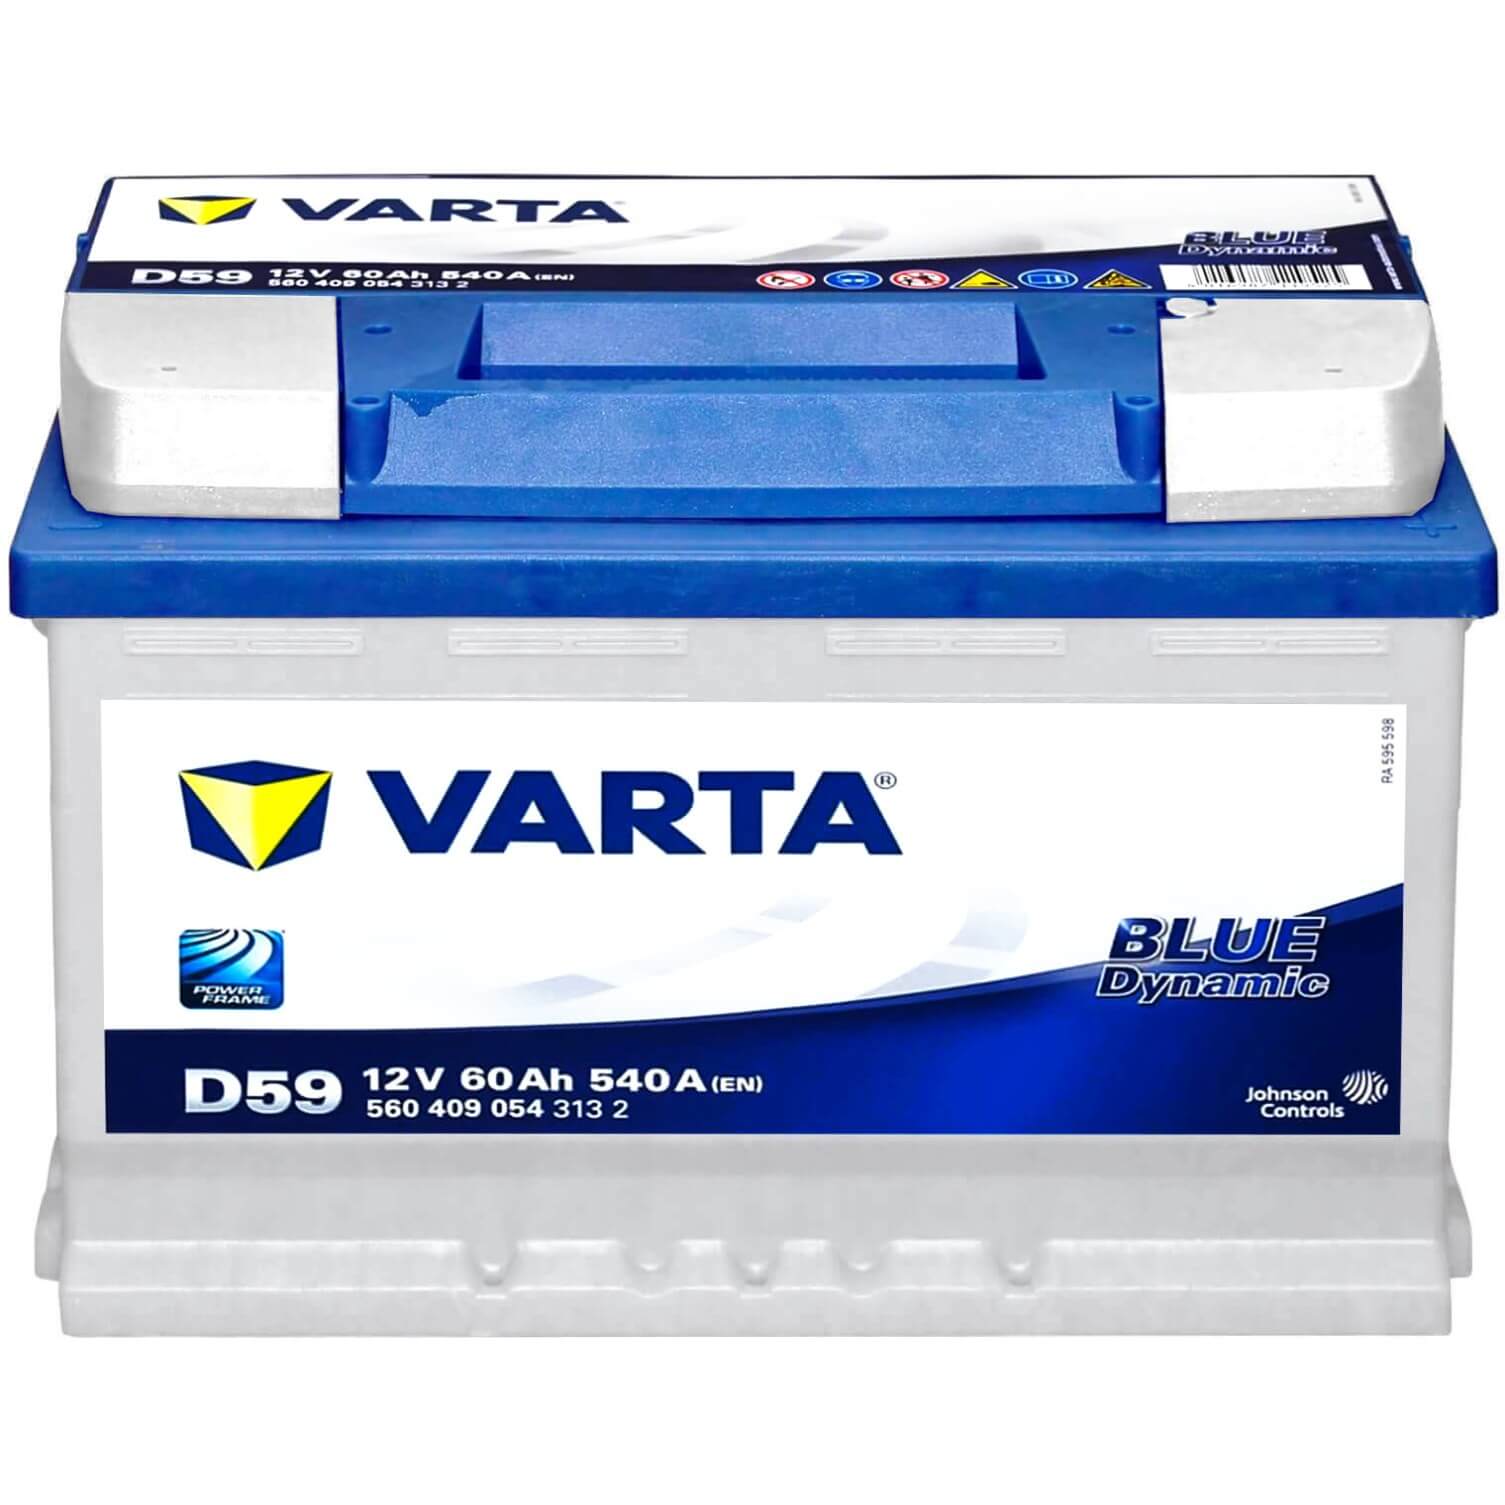 Varta D59 Blue Dynamic 12V 60Ah Batterie 5604090543132